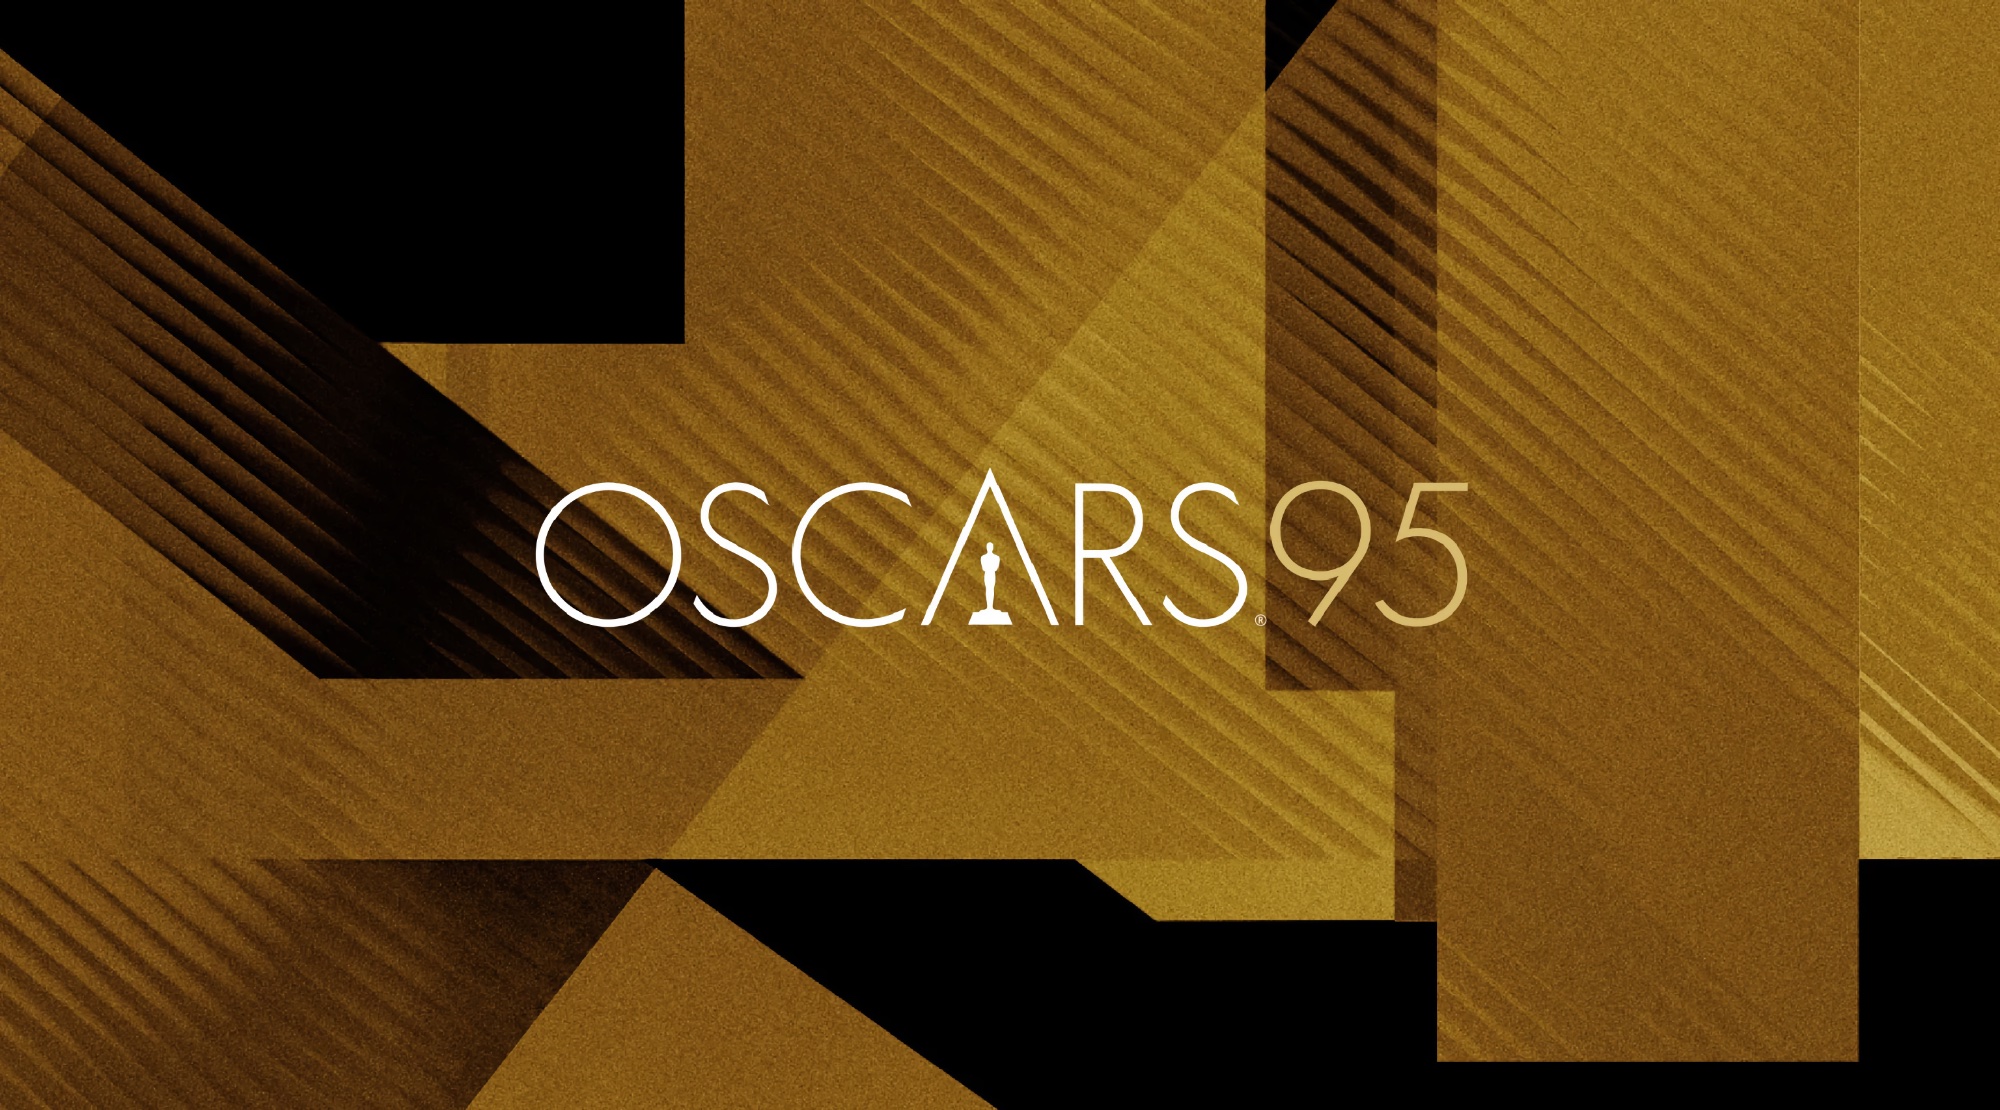 The 95th Oscars